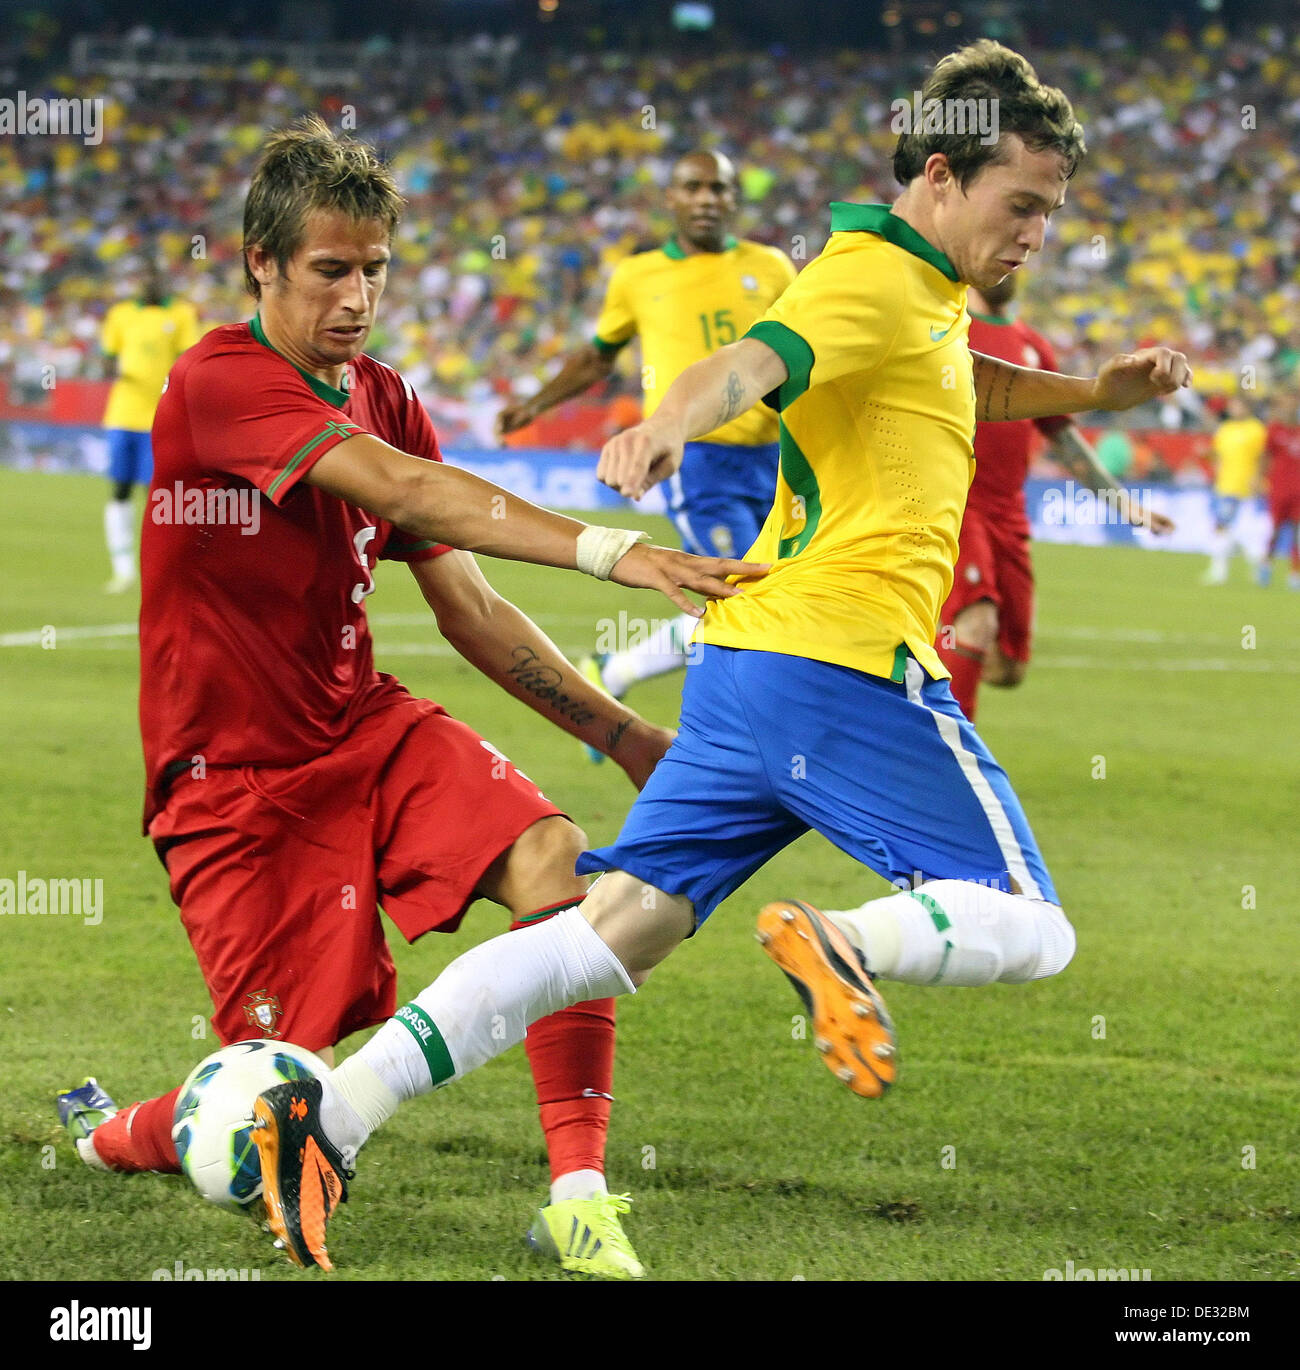 Chile, Brazil soccer teams coming to Foxborough in June - The Boston Globe